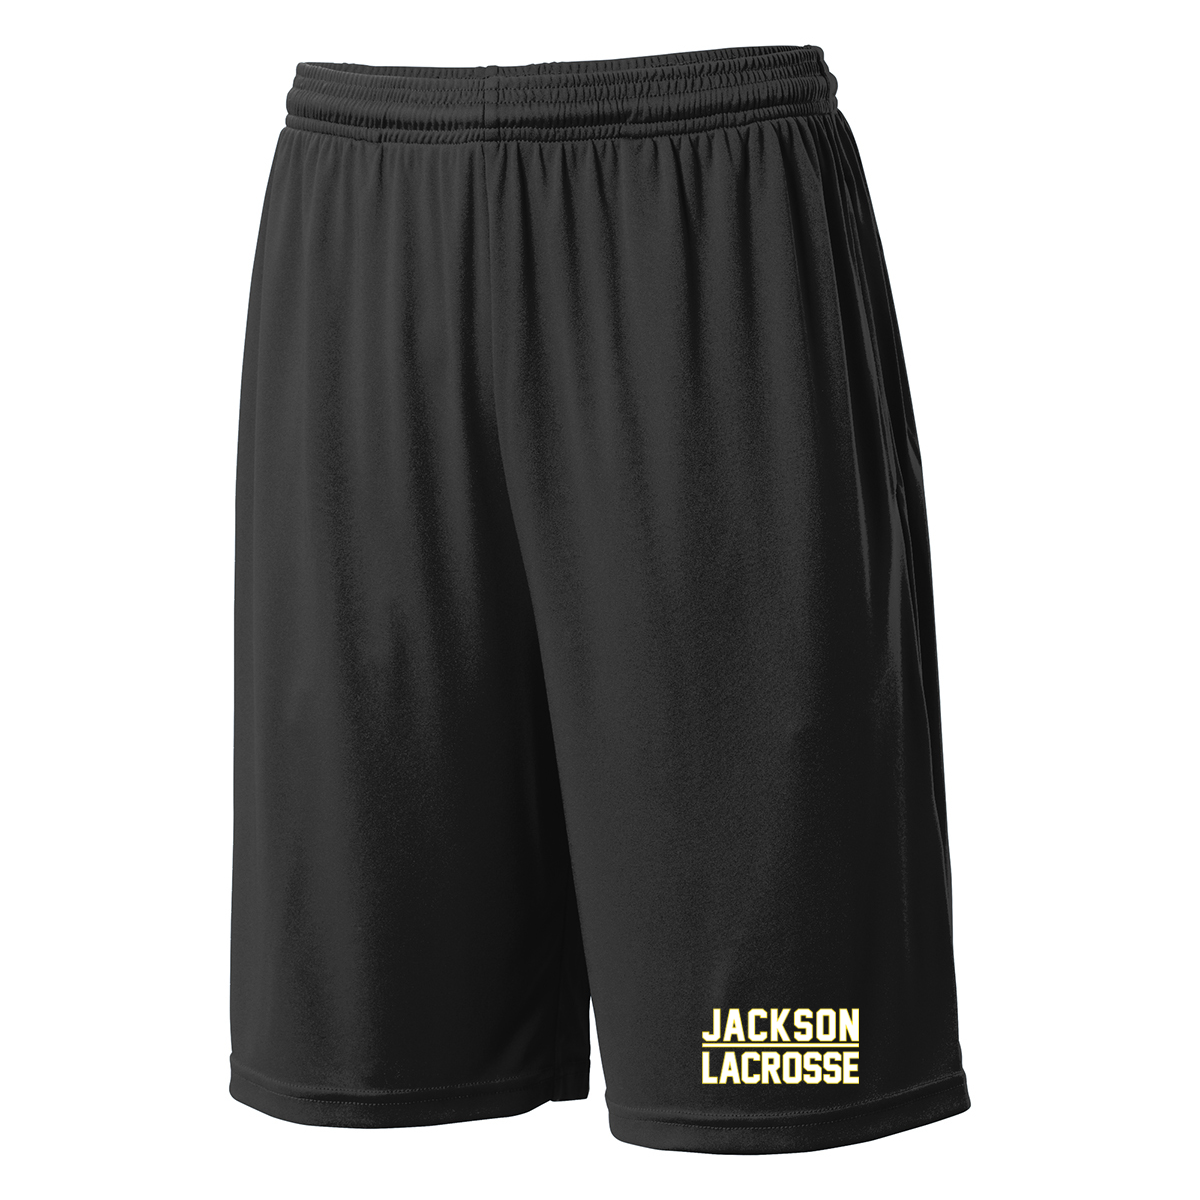 Jackson Lacrosse Shorts